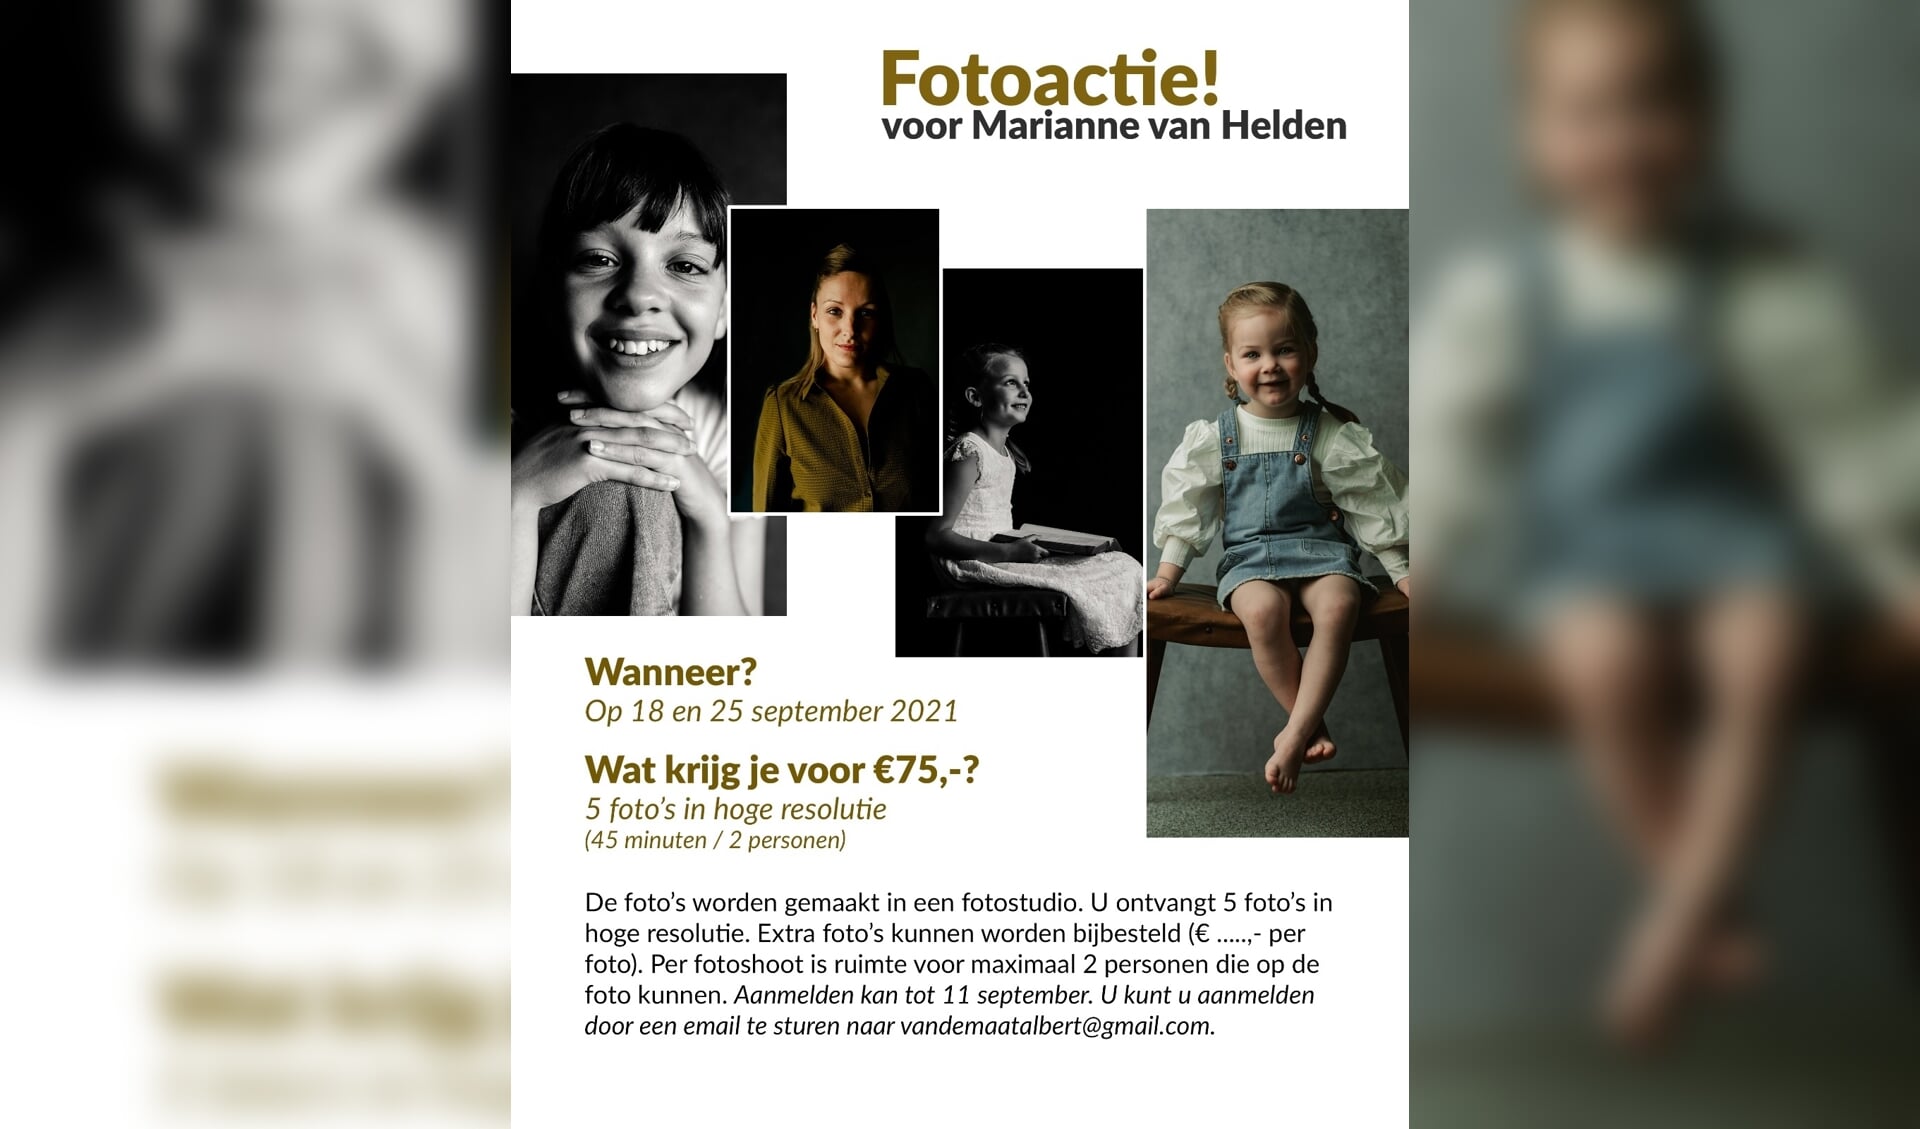 Ontvang prachtige foto's in hoge resolutie en steun het werk van Marianne van Helden.